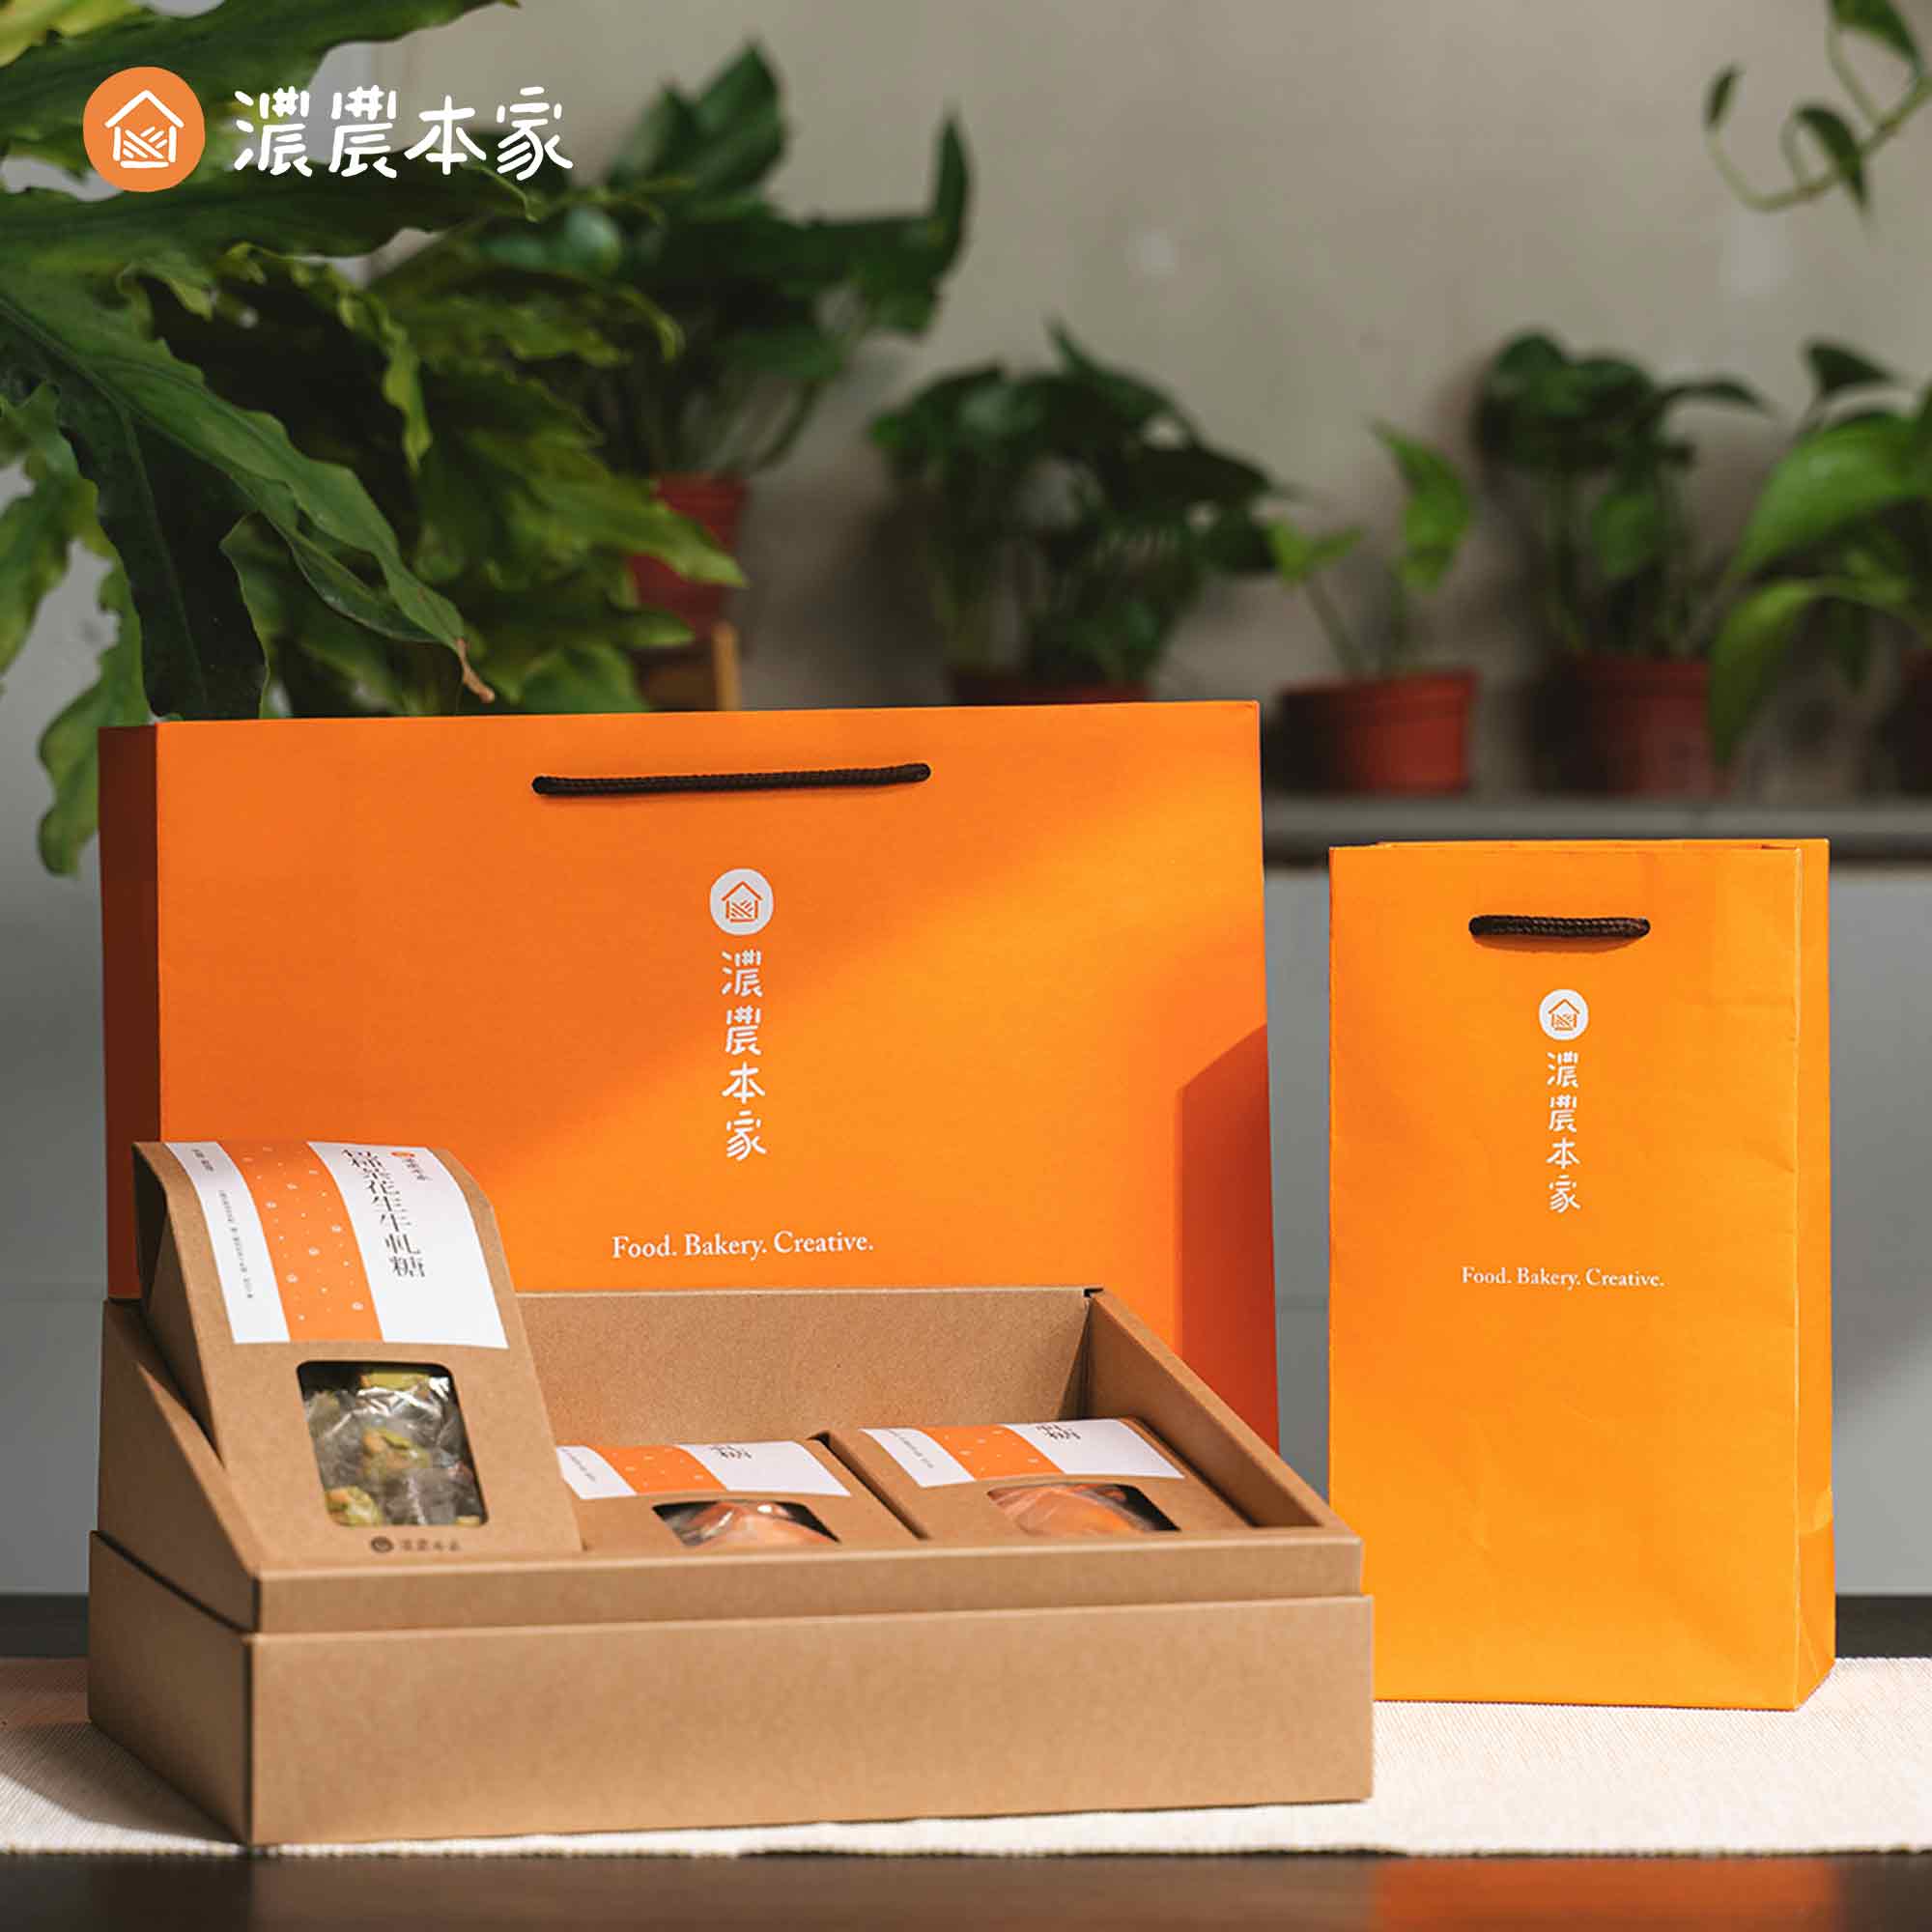 回國禮物推薦代表台灣特色的小禮物-台灣茶葉禮盒！送禮給外國人一定超喜歡！